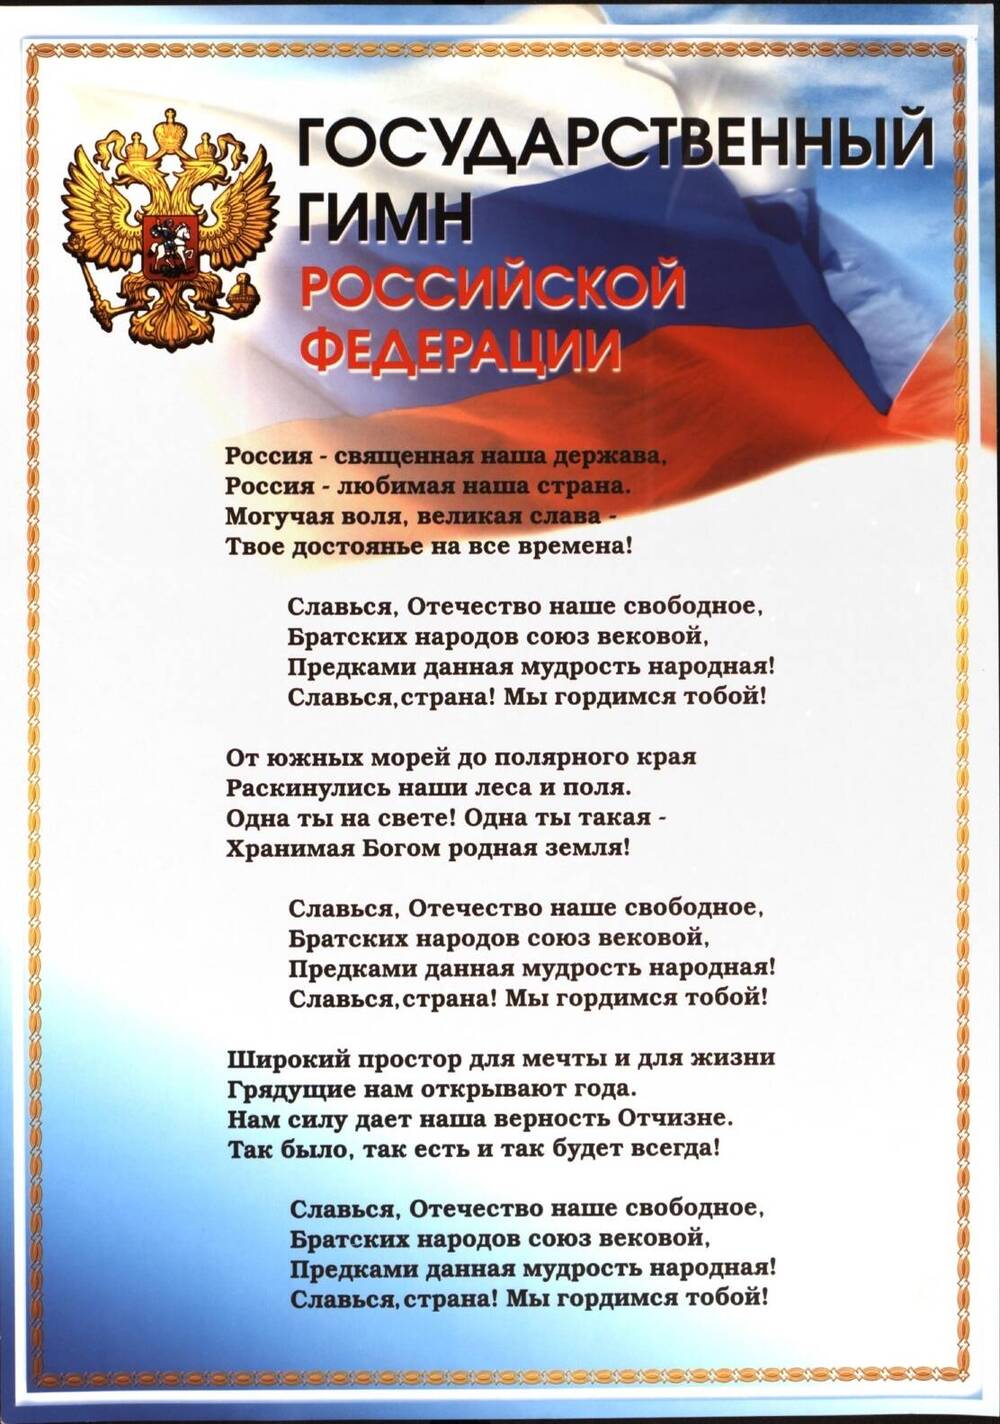 Плакат. «Государственный Гимн Российской Федерации». Российская Федерация, 2003 г.